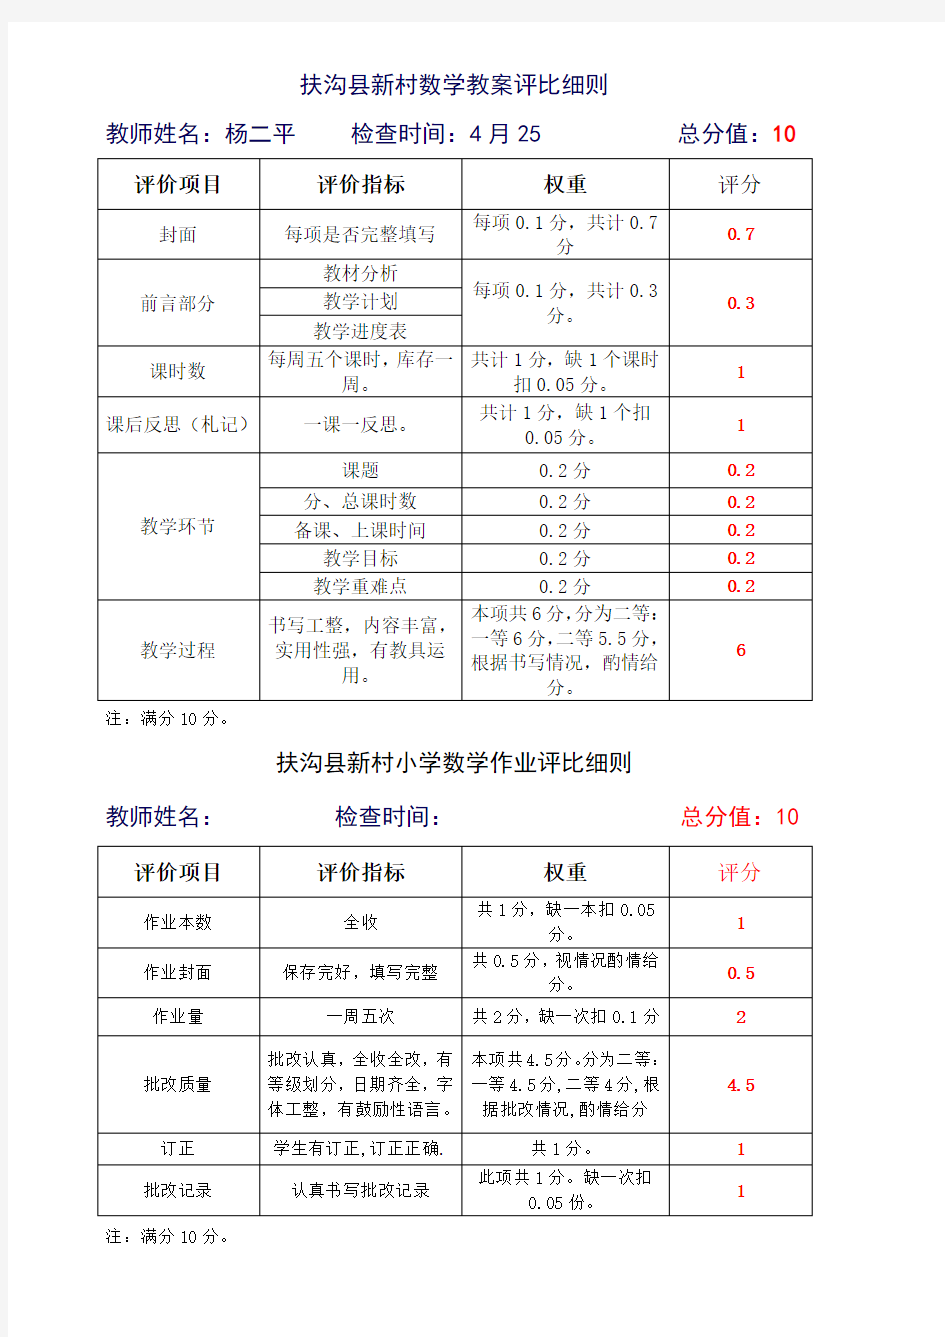 扶沟县新村小学数学组第二次作业教案检查总结